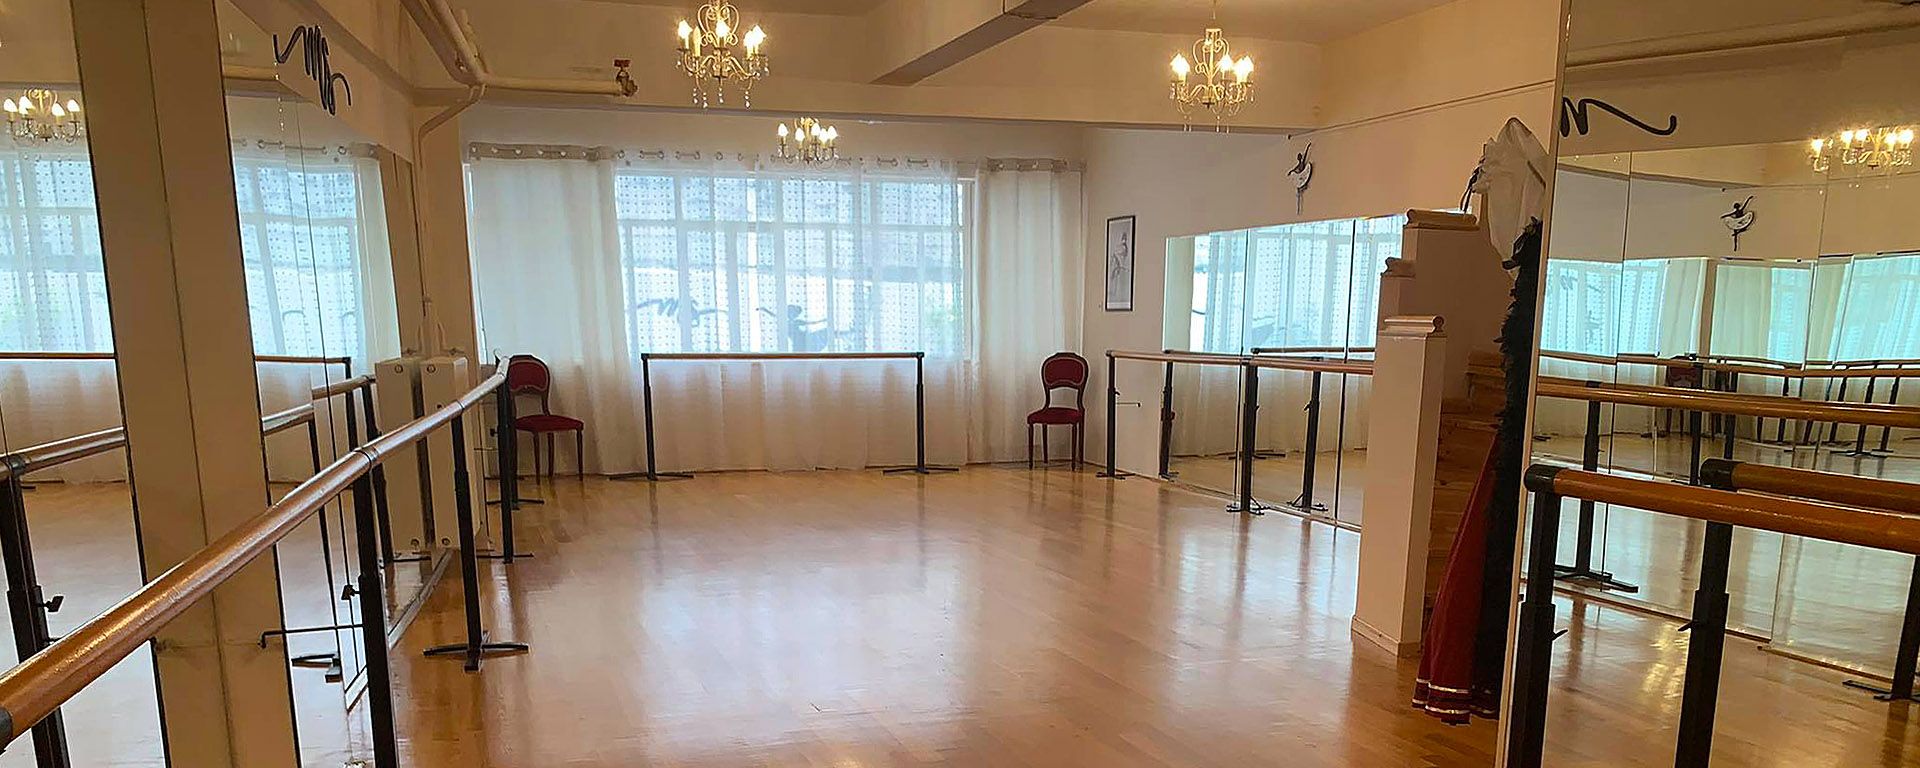 Αίθουσα χορού σχολή μπαλέτου στη Λάρισα